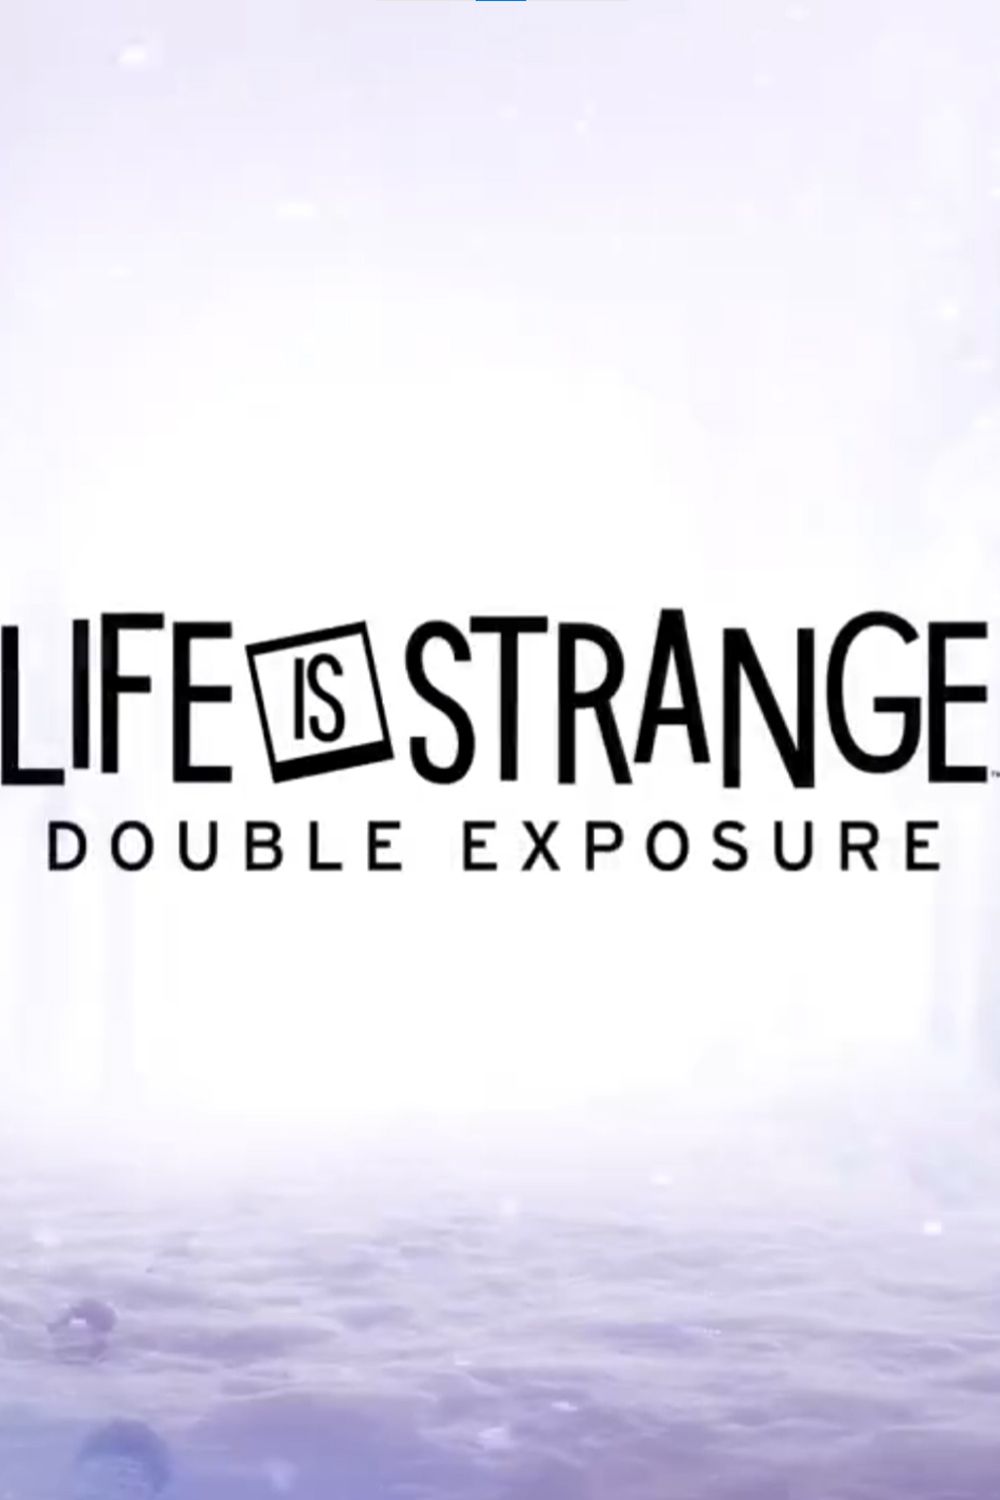 life is strange double exposure-2